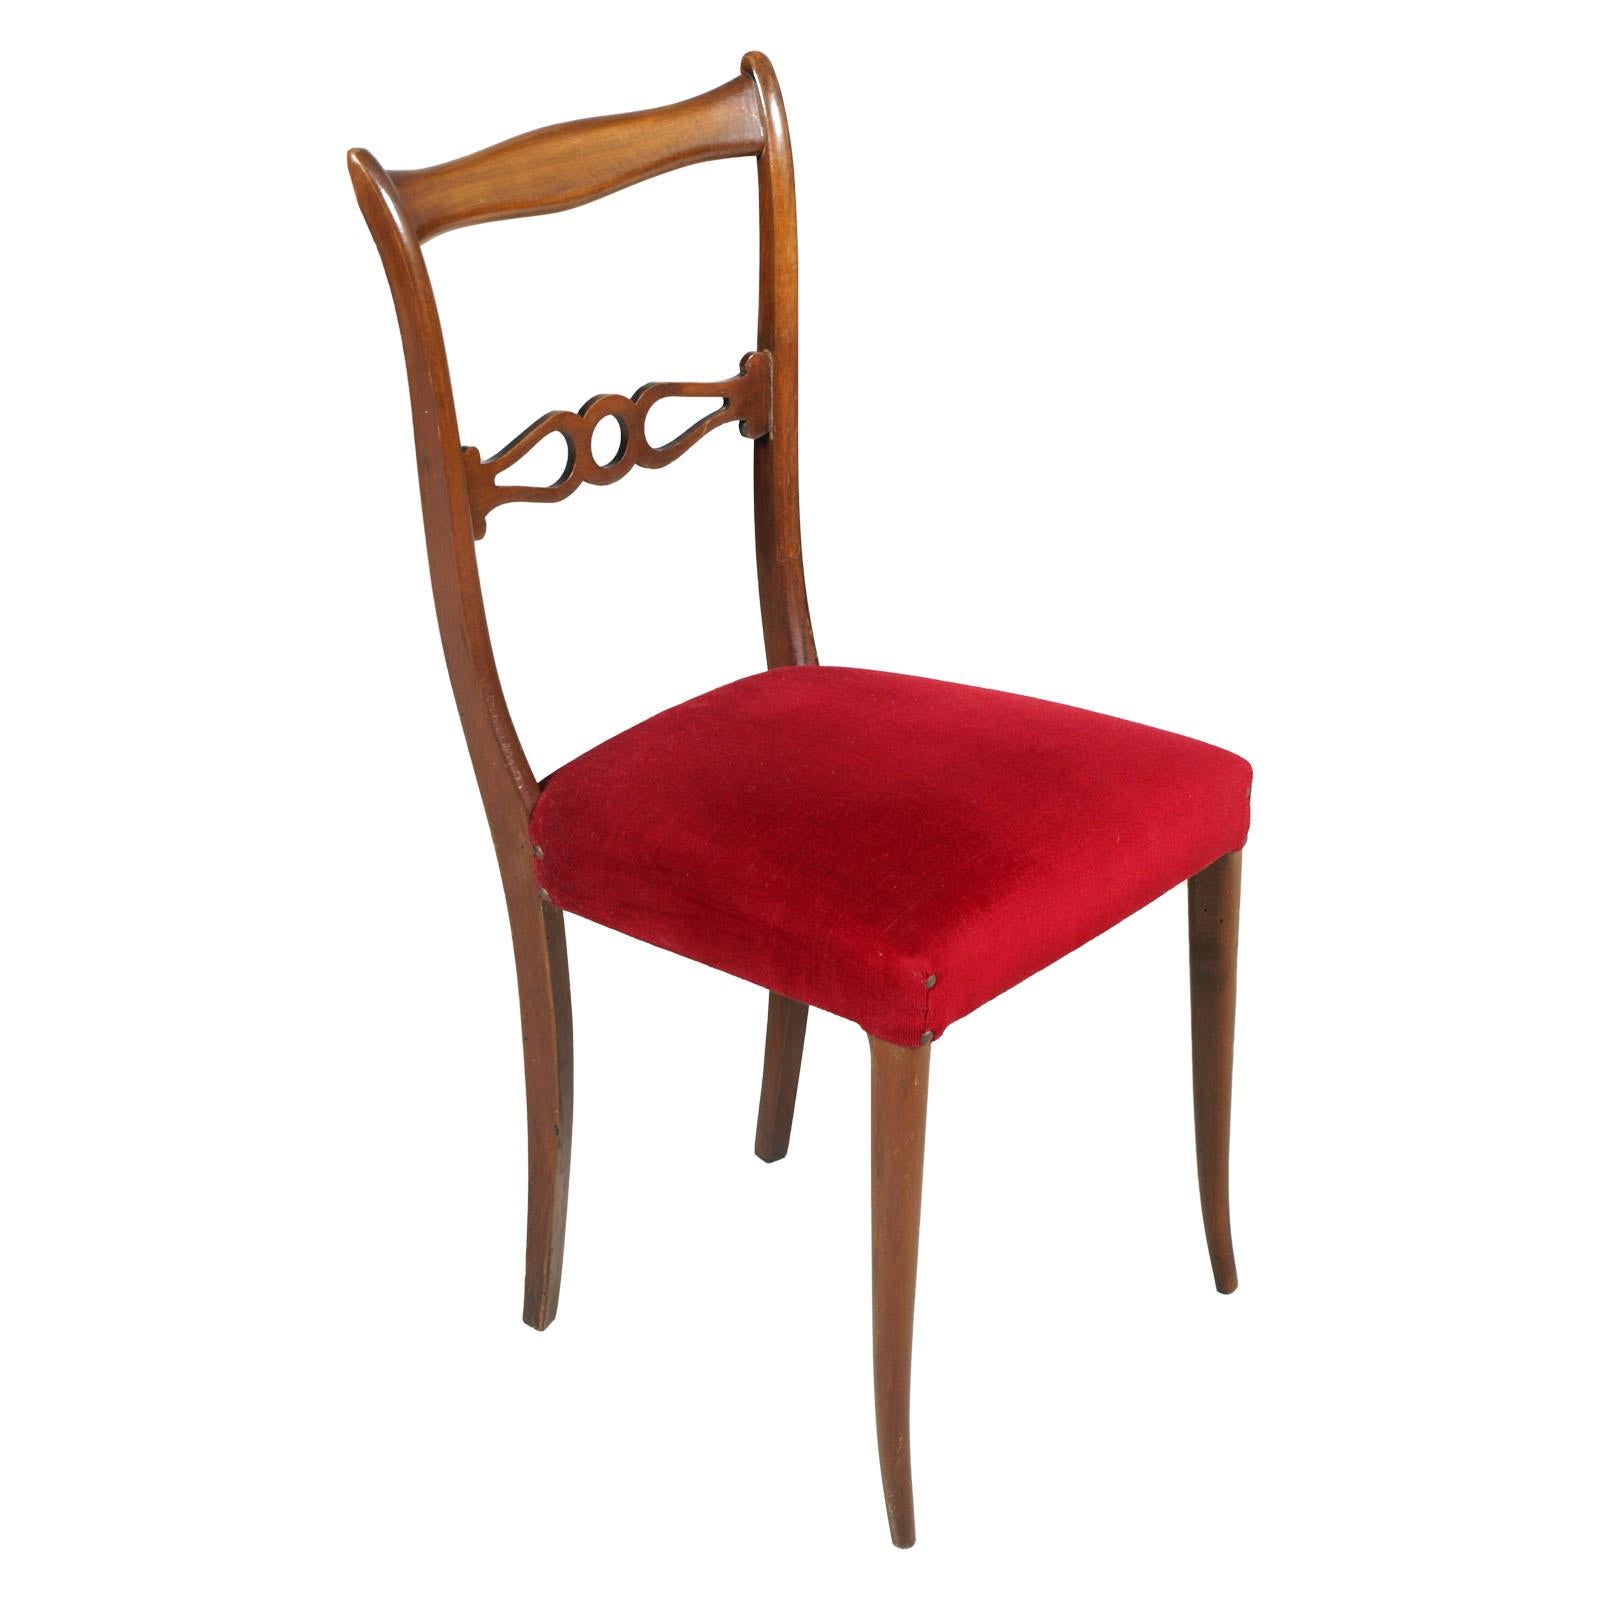 Une paire de chaises latérales en acajou laqué du milieu du 20e siècle, attribuée à Melchiorre Bega. Excellent état général, le bois et le lin étant particulièrement bien conservés.
Tapisserie originale en velours rouge en bon état.

Mesures en